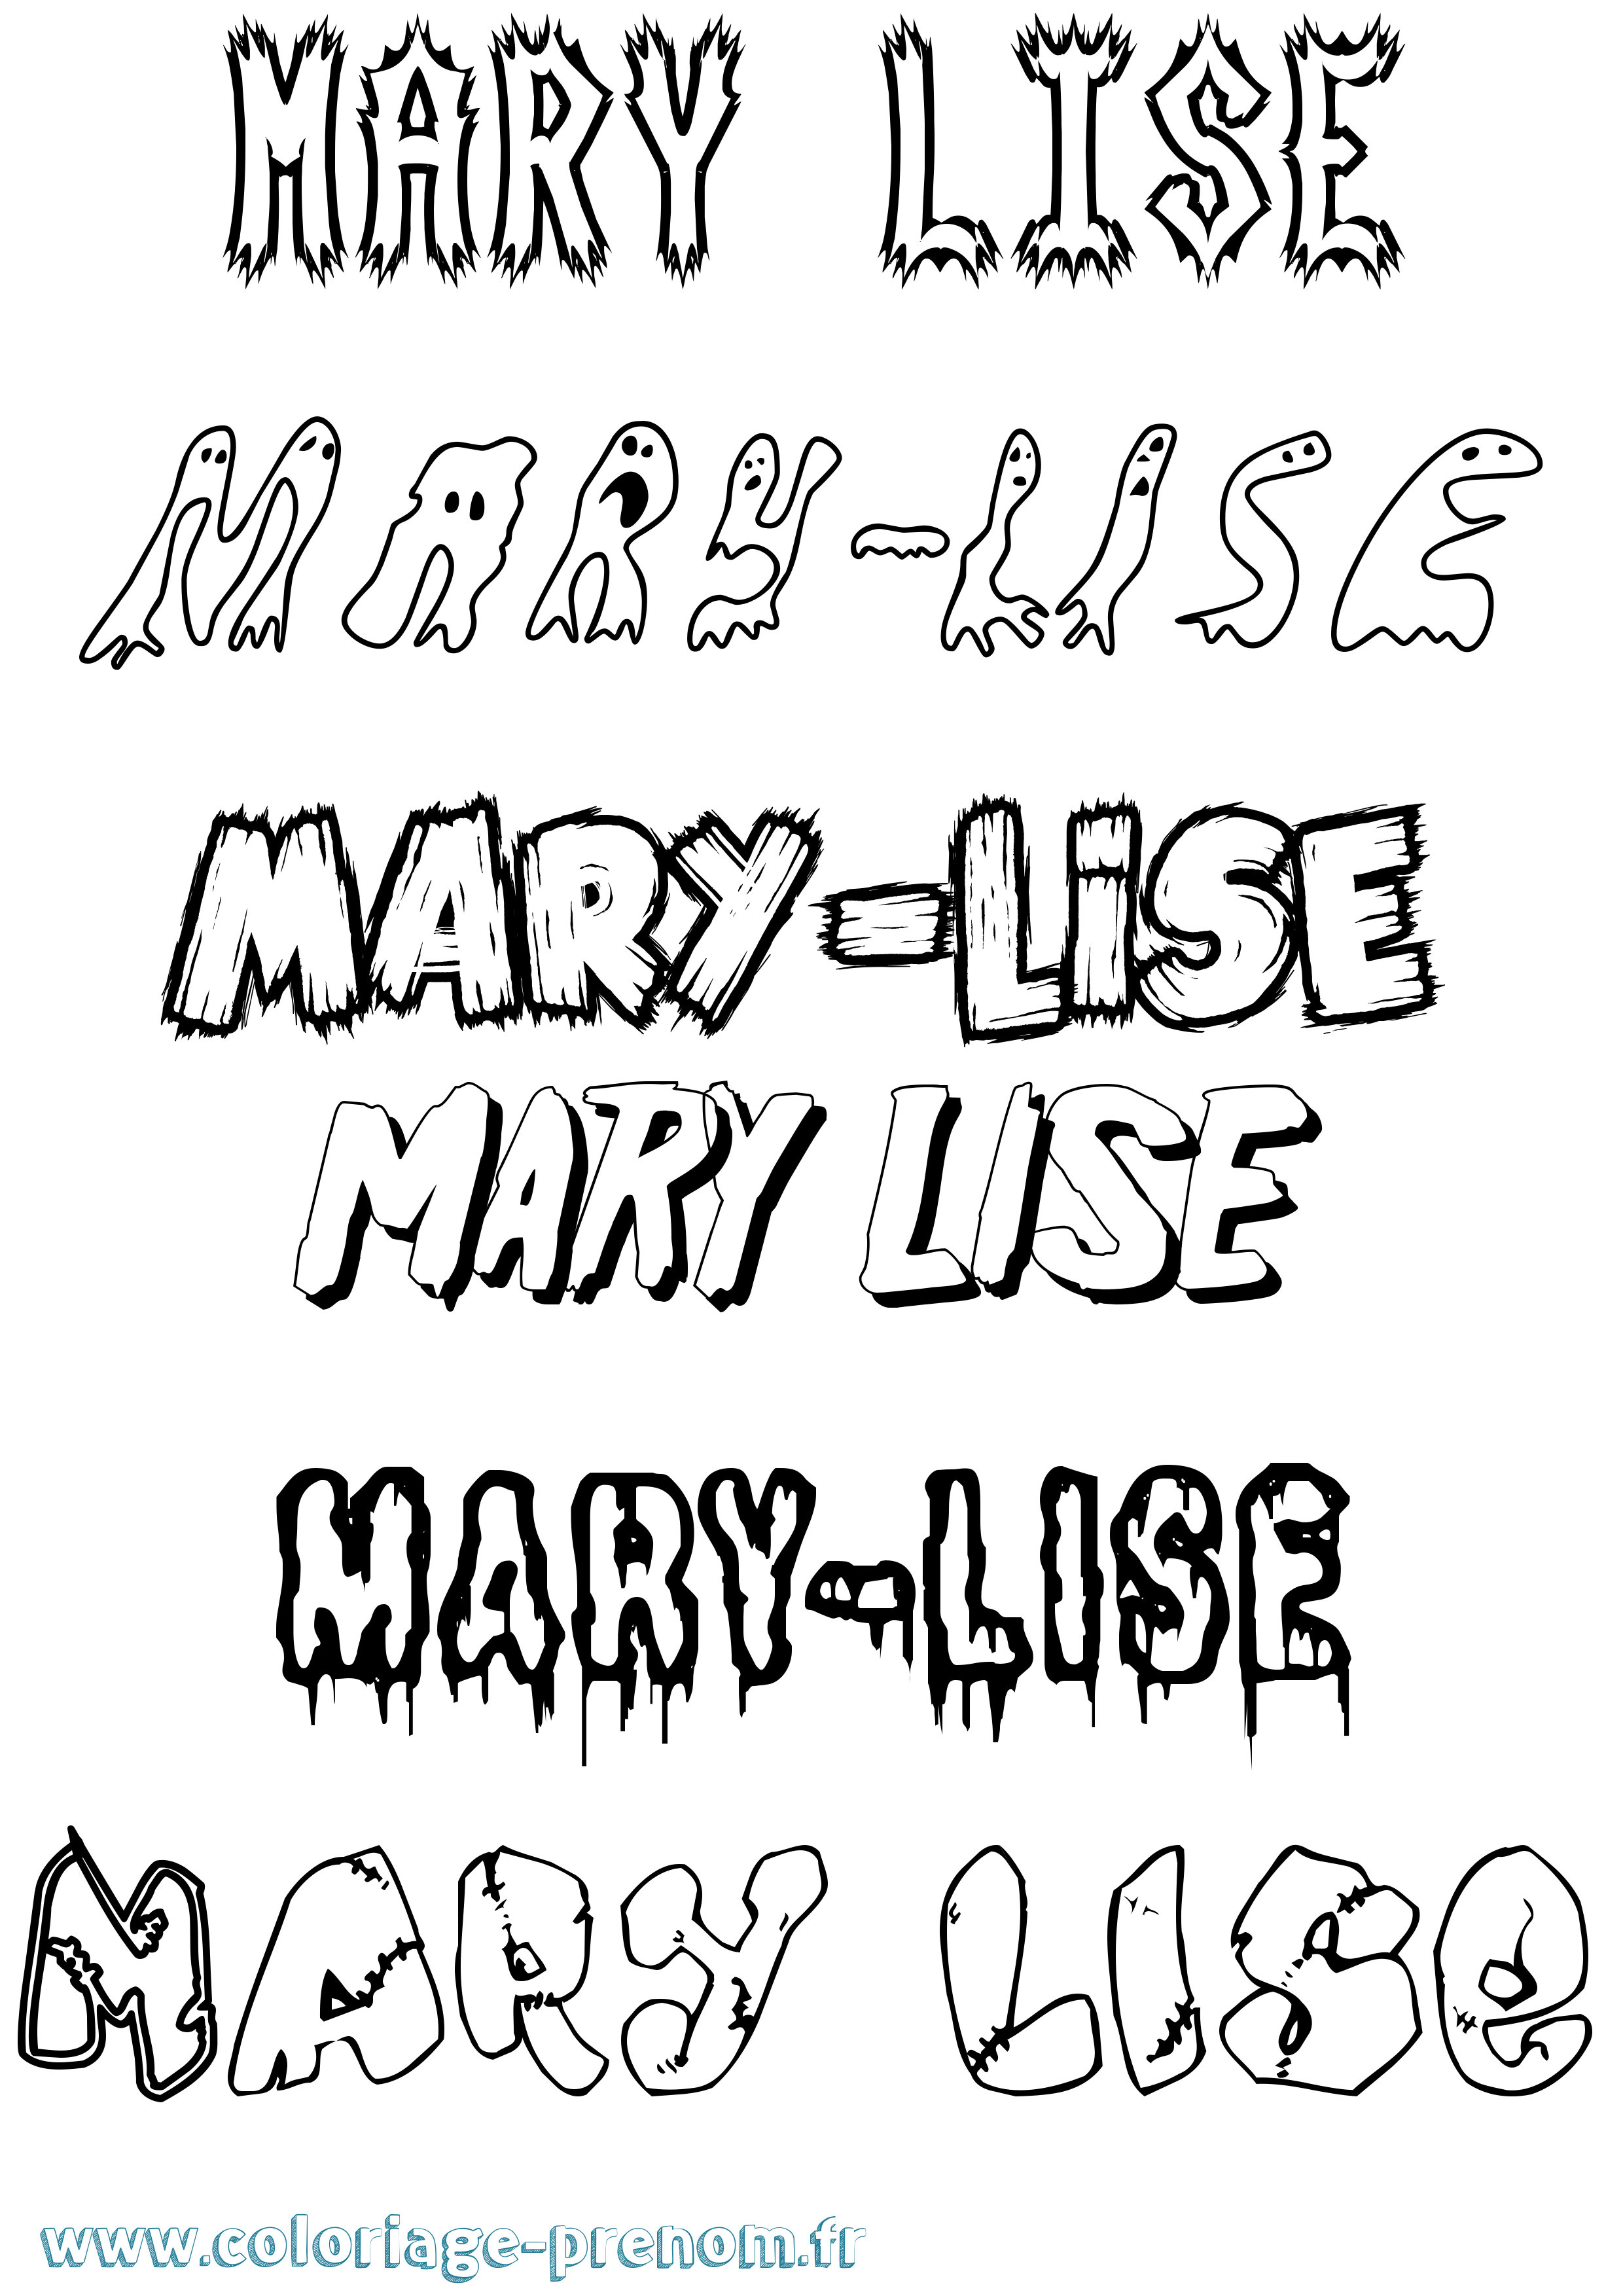 Coloriage prénom Mary-Lise Frisson